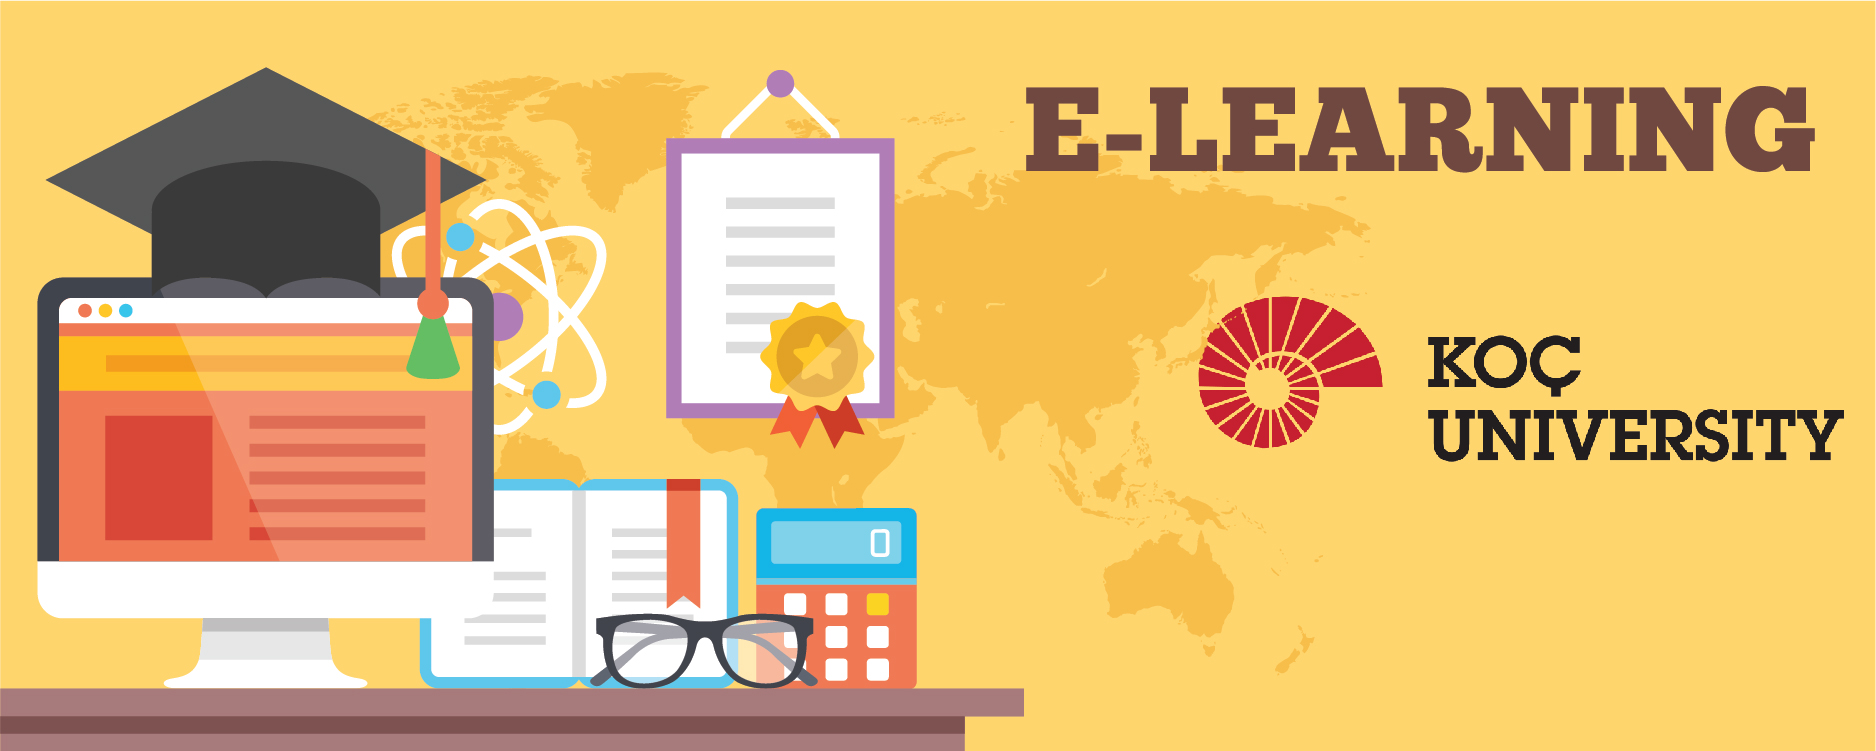 Blackboard Learning Management System Training Basic Level EdTech_02